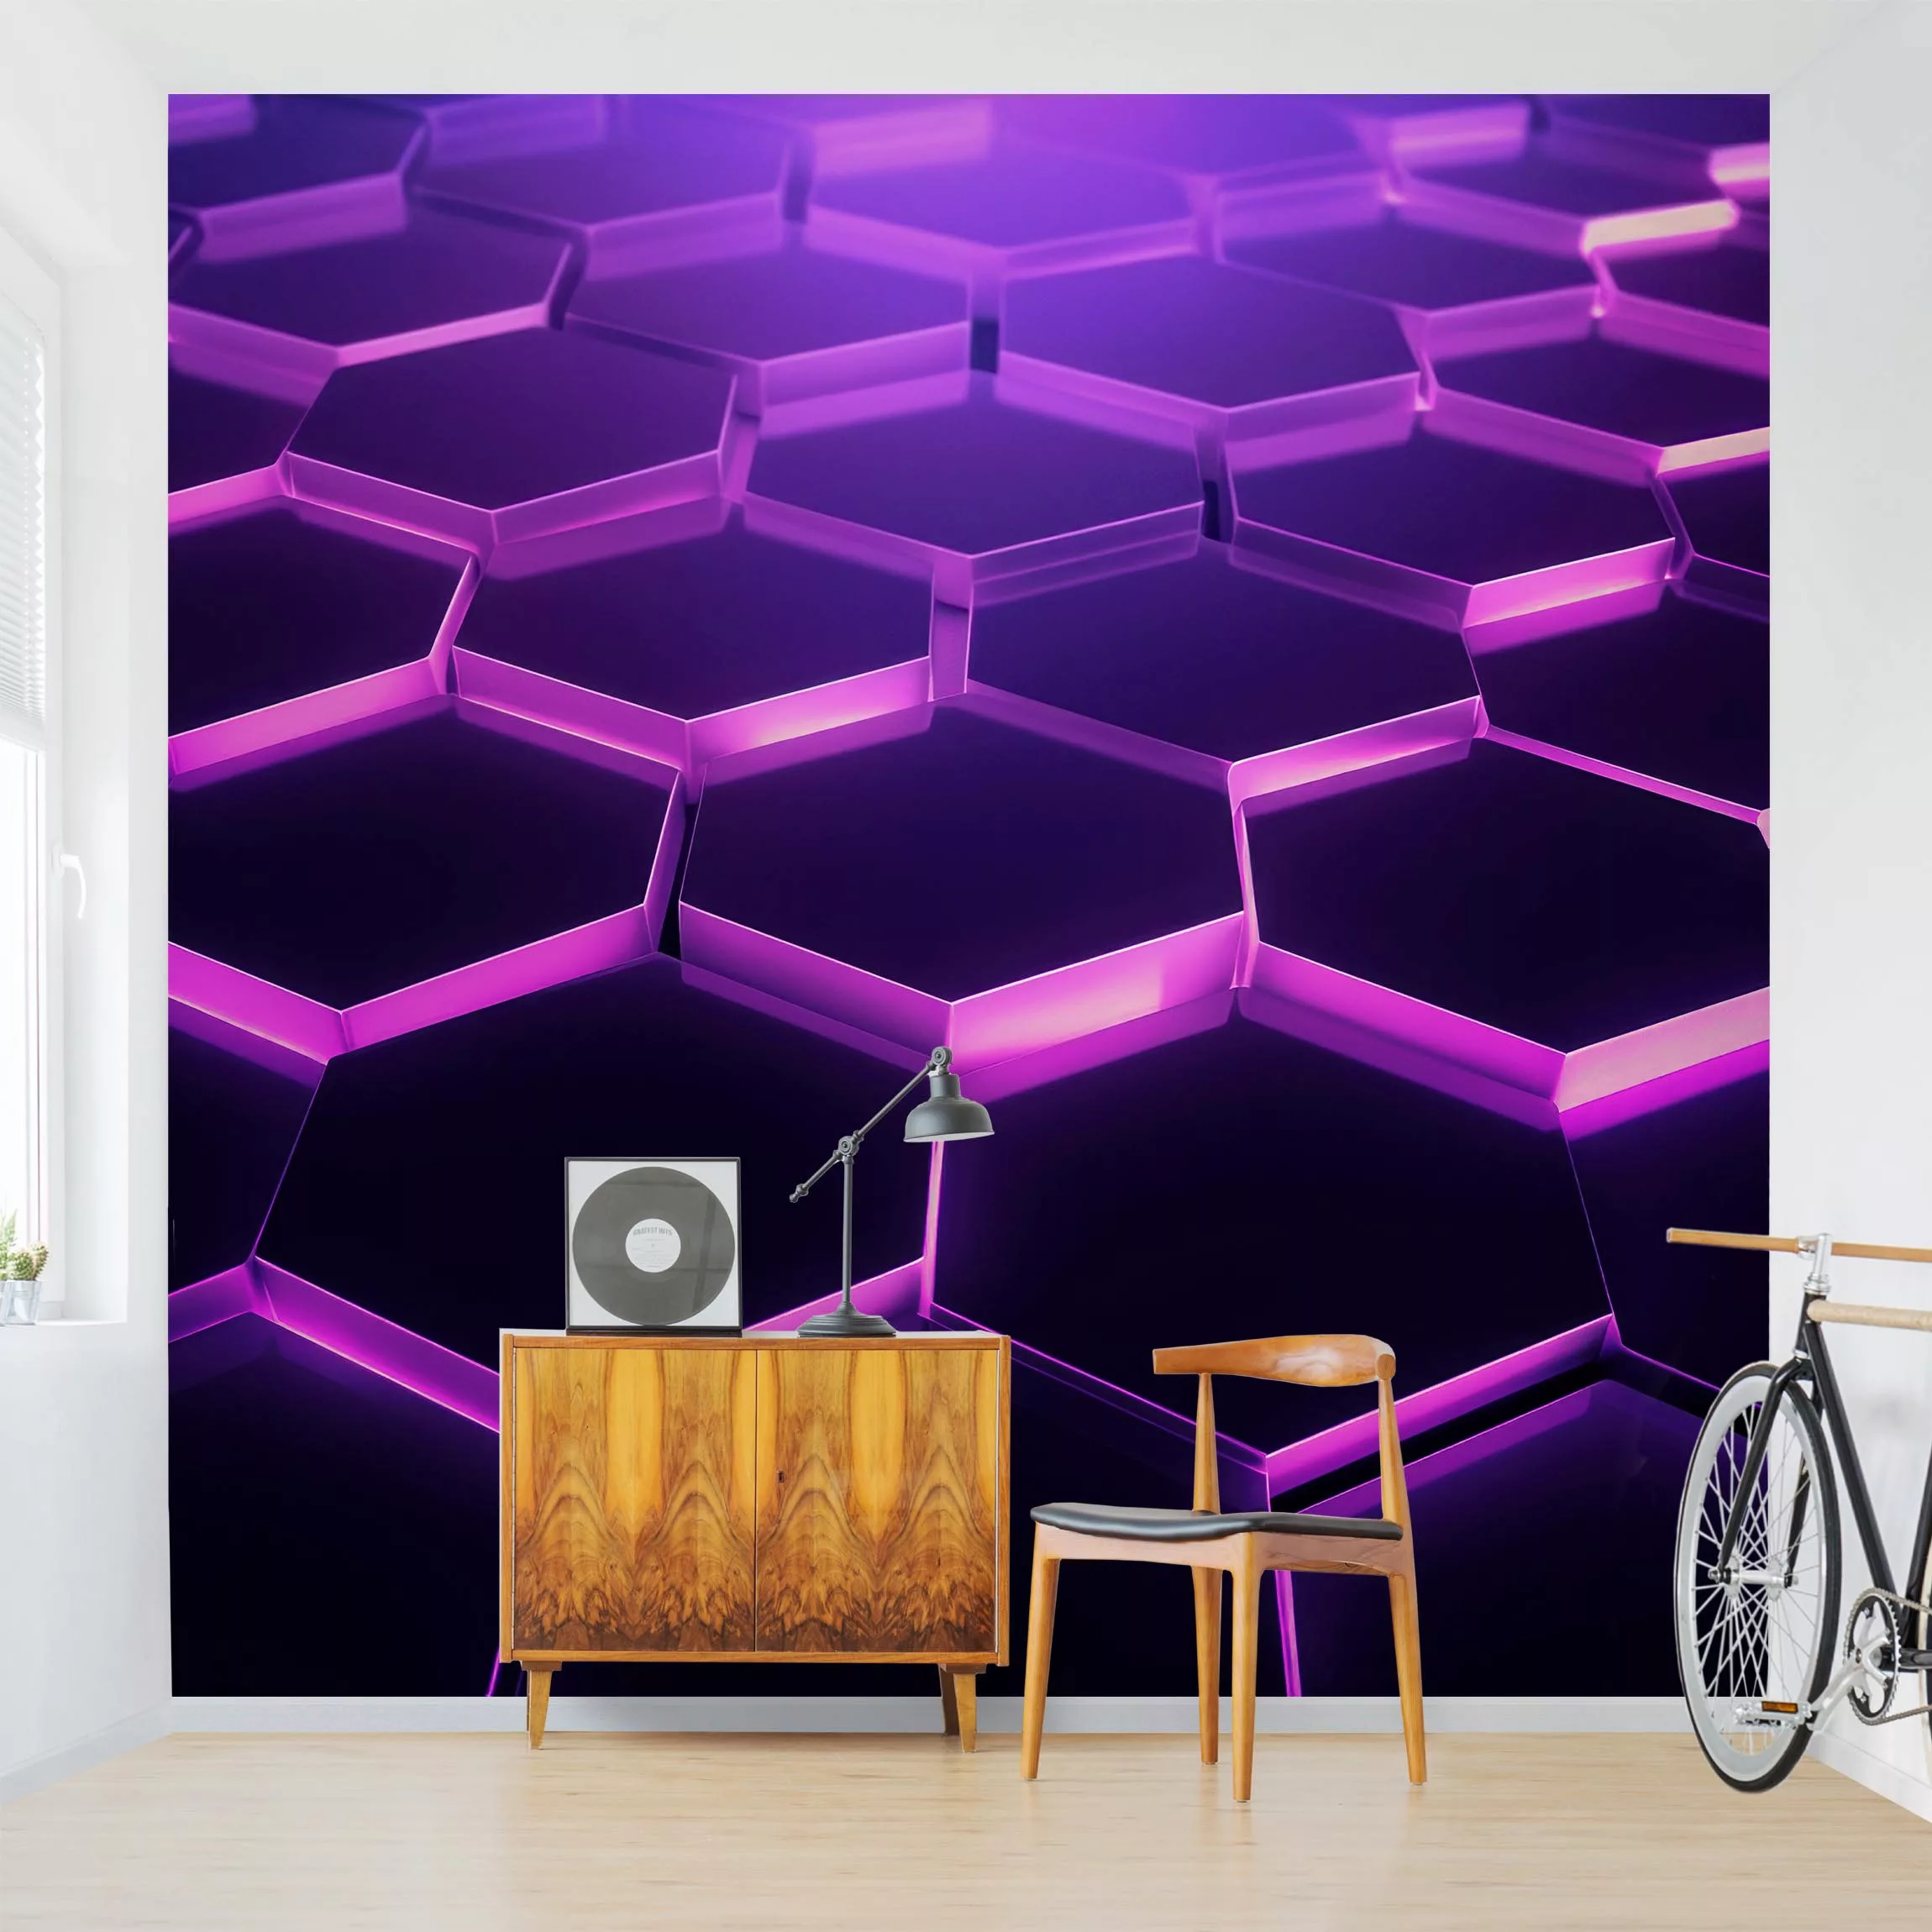 Fototapete Hexagone mit Neonlicht in Lila günstig online kaufen